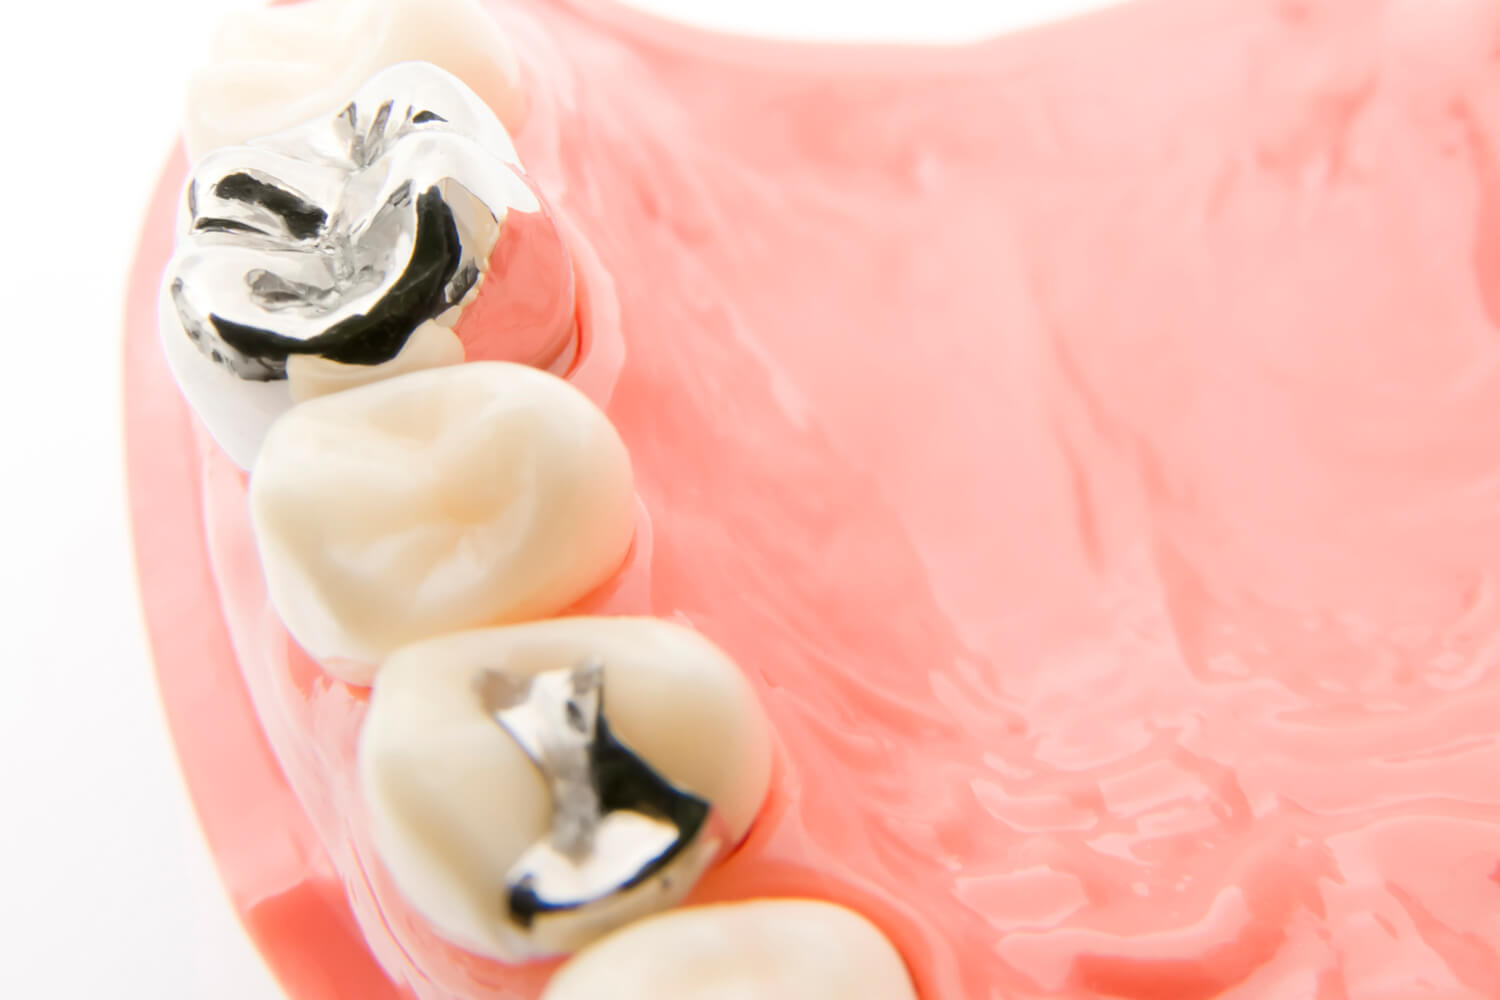 銀歯には金属アレルギーのリスクがあります